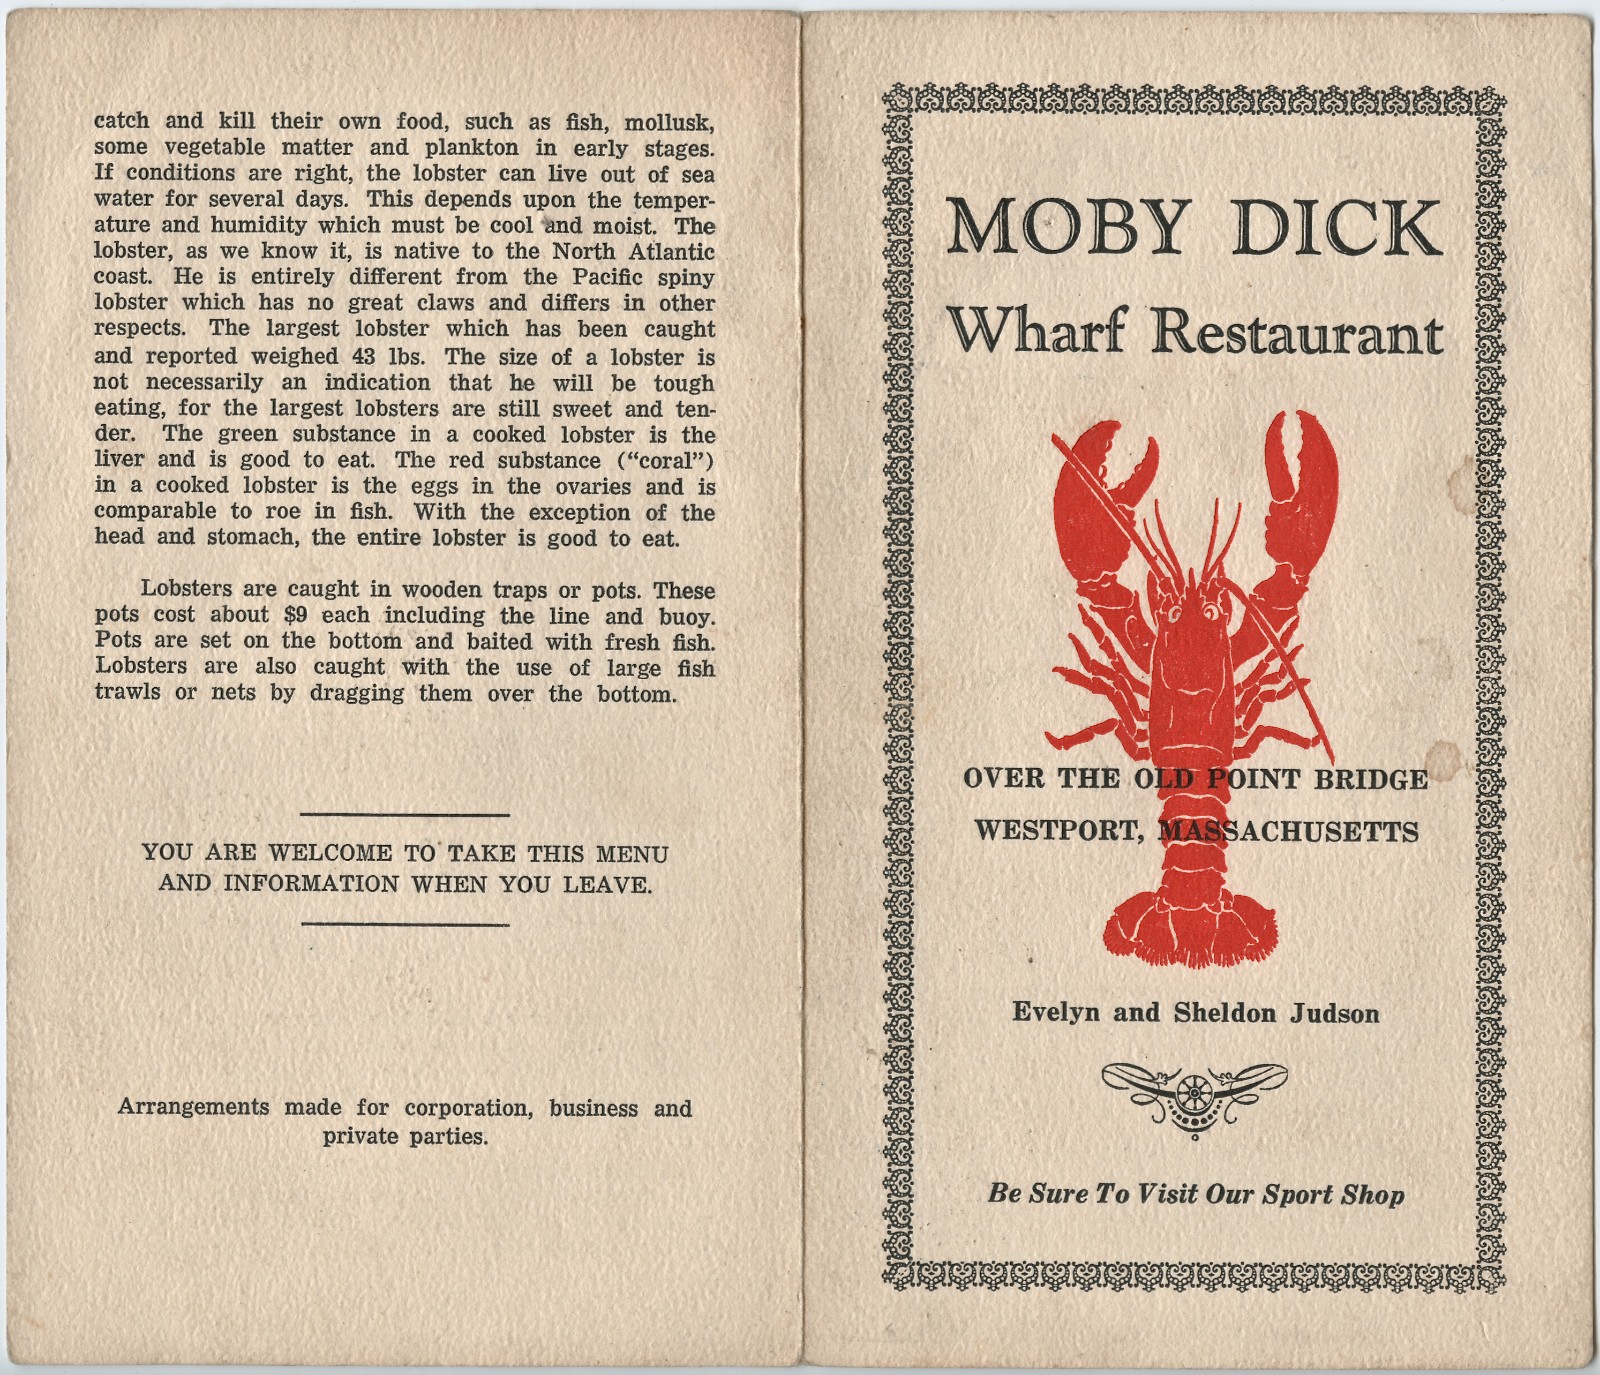 Moby Dick Wharf Restaurant Menu cover